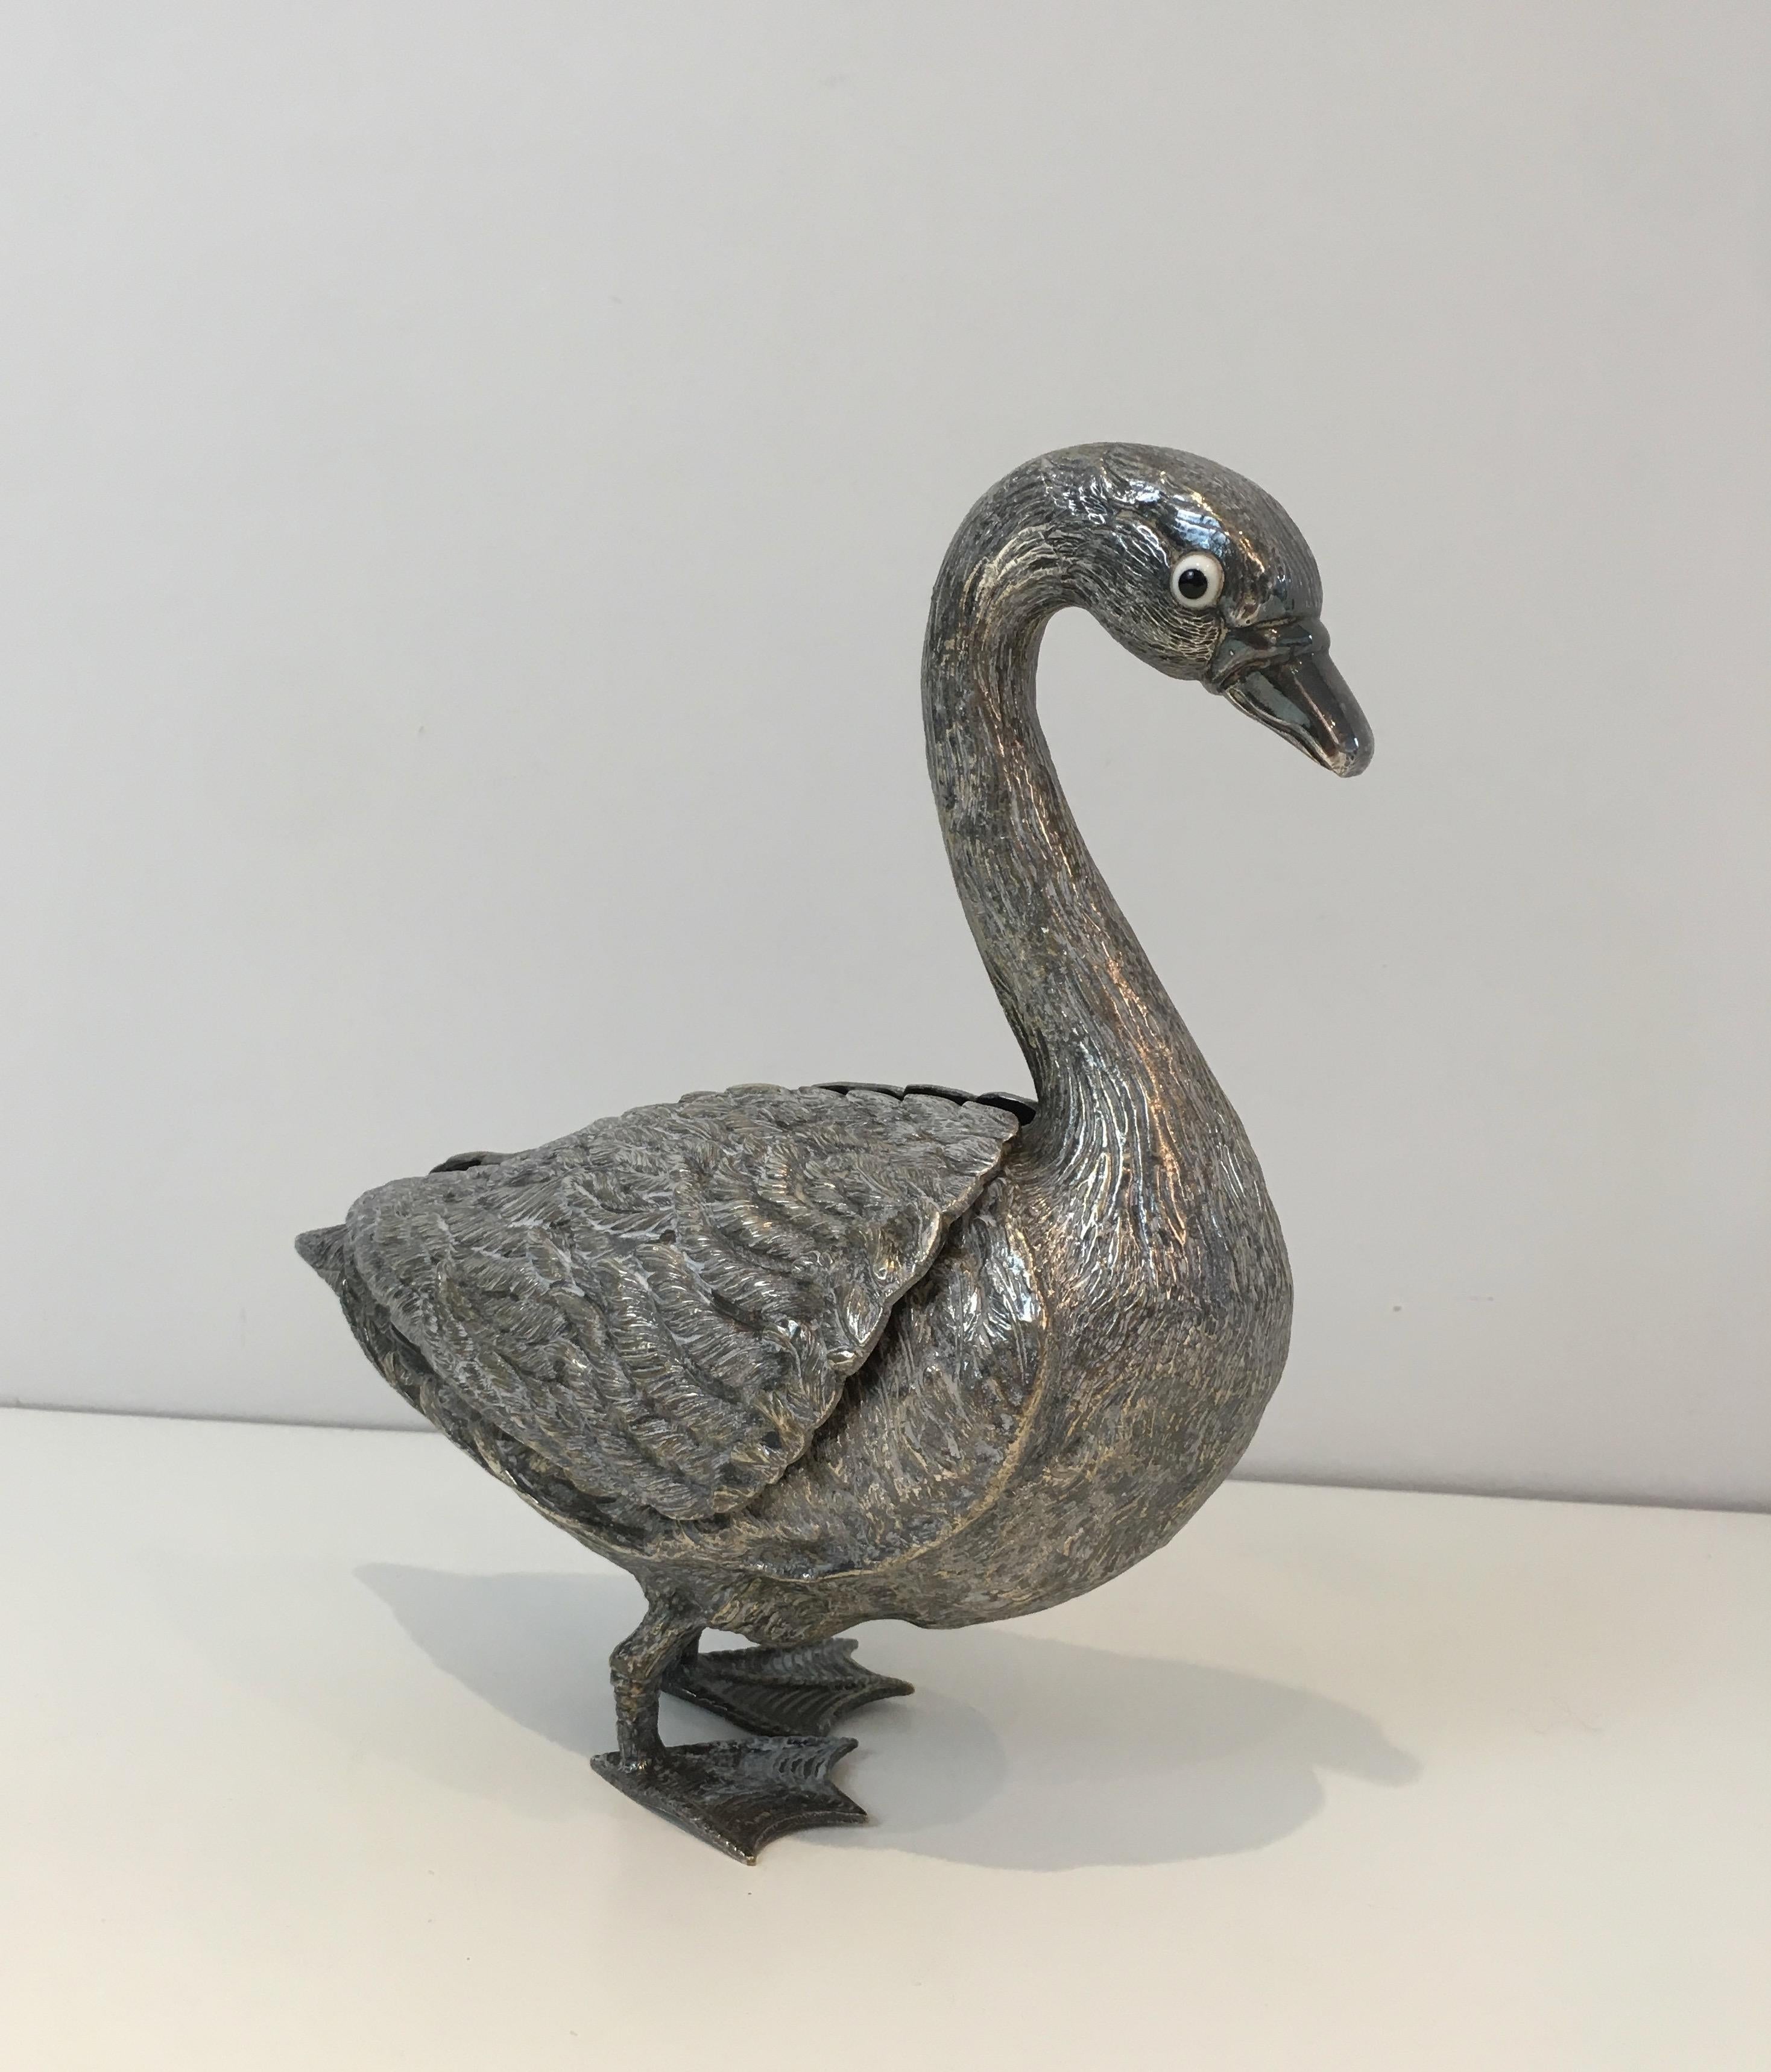 Cet insolite canard néoclassique ouvrant une boîte avec ses ailes est entièrement réalisé en métal argenté avec des yeux en verre. Il s'agit d'une œuvre française, datant d'environ 1970.